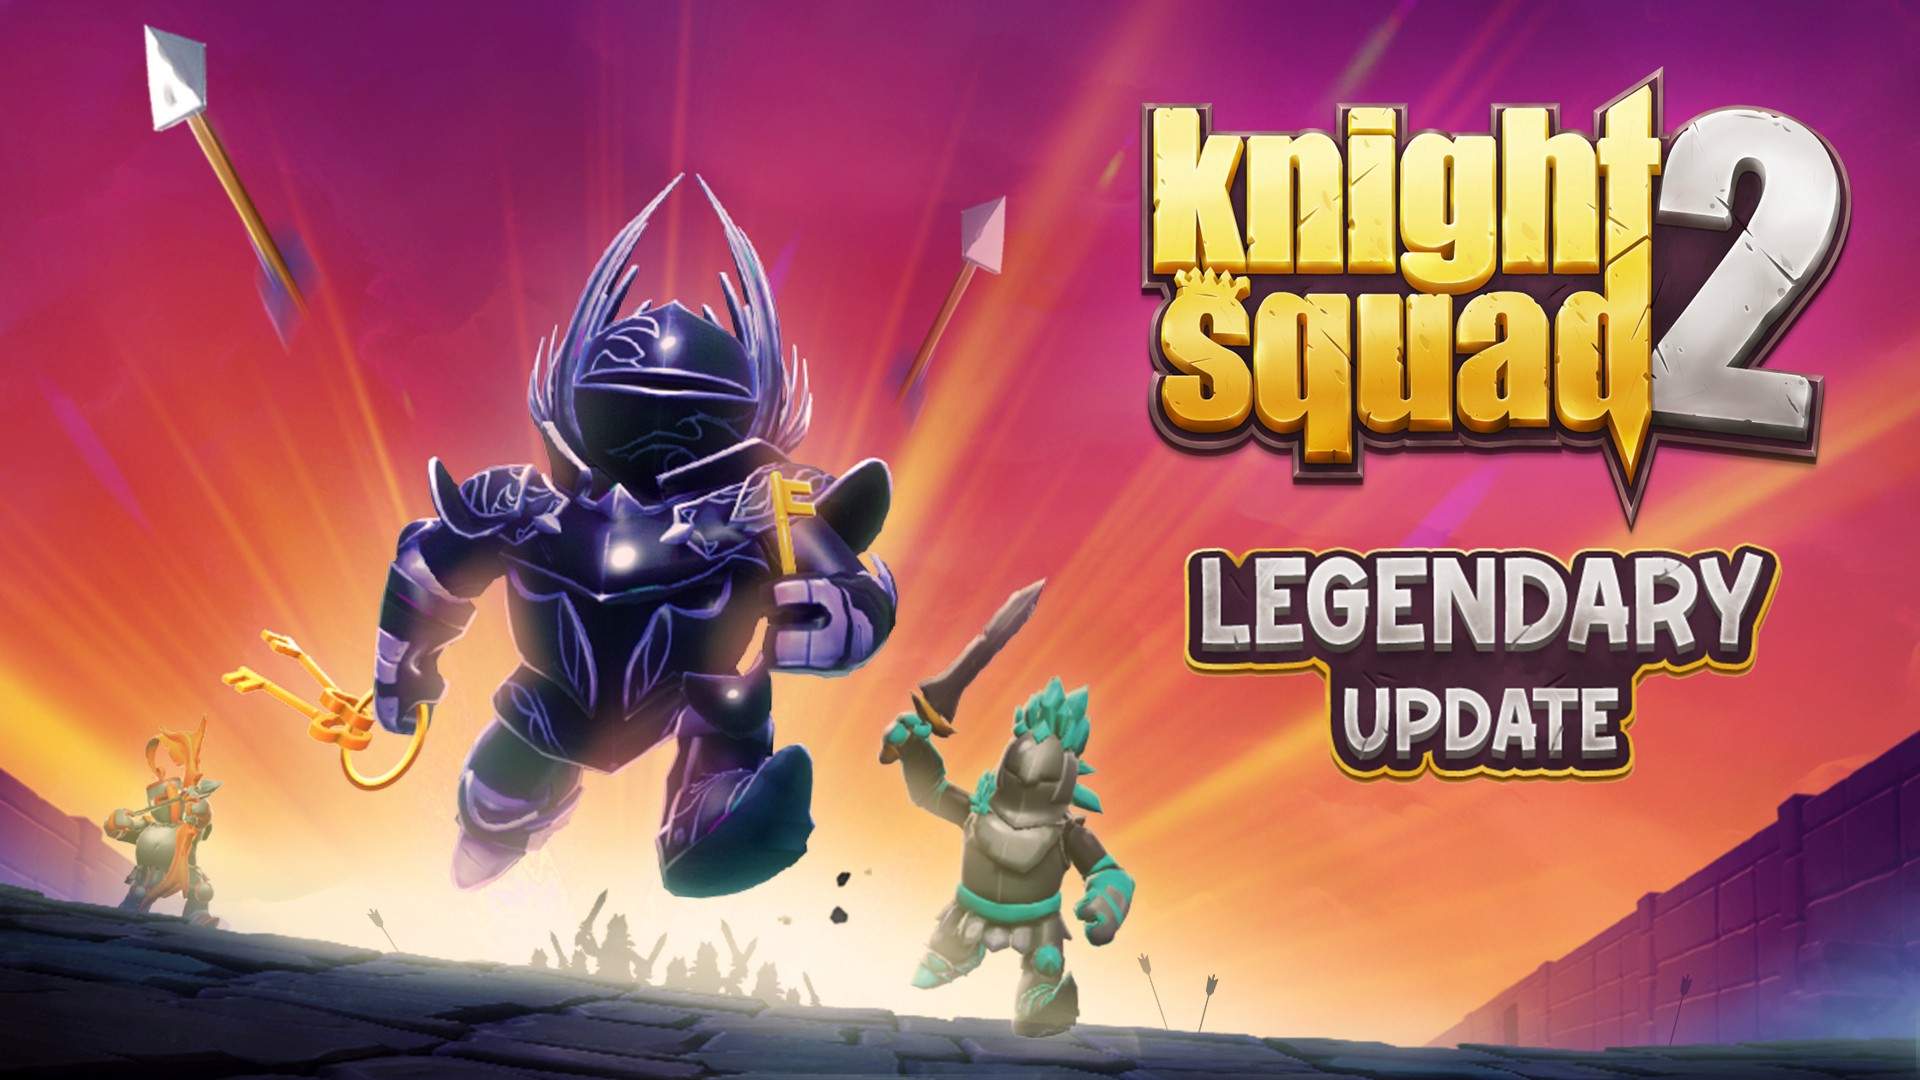 Ottieni oggi l'aggiornamento leggendario per Knight Squad 2